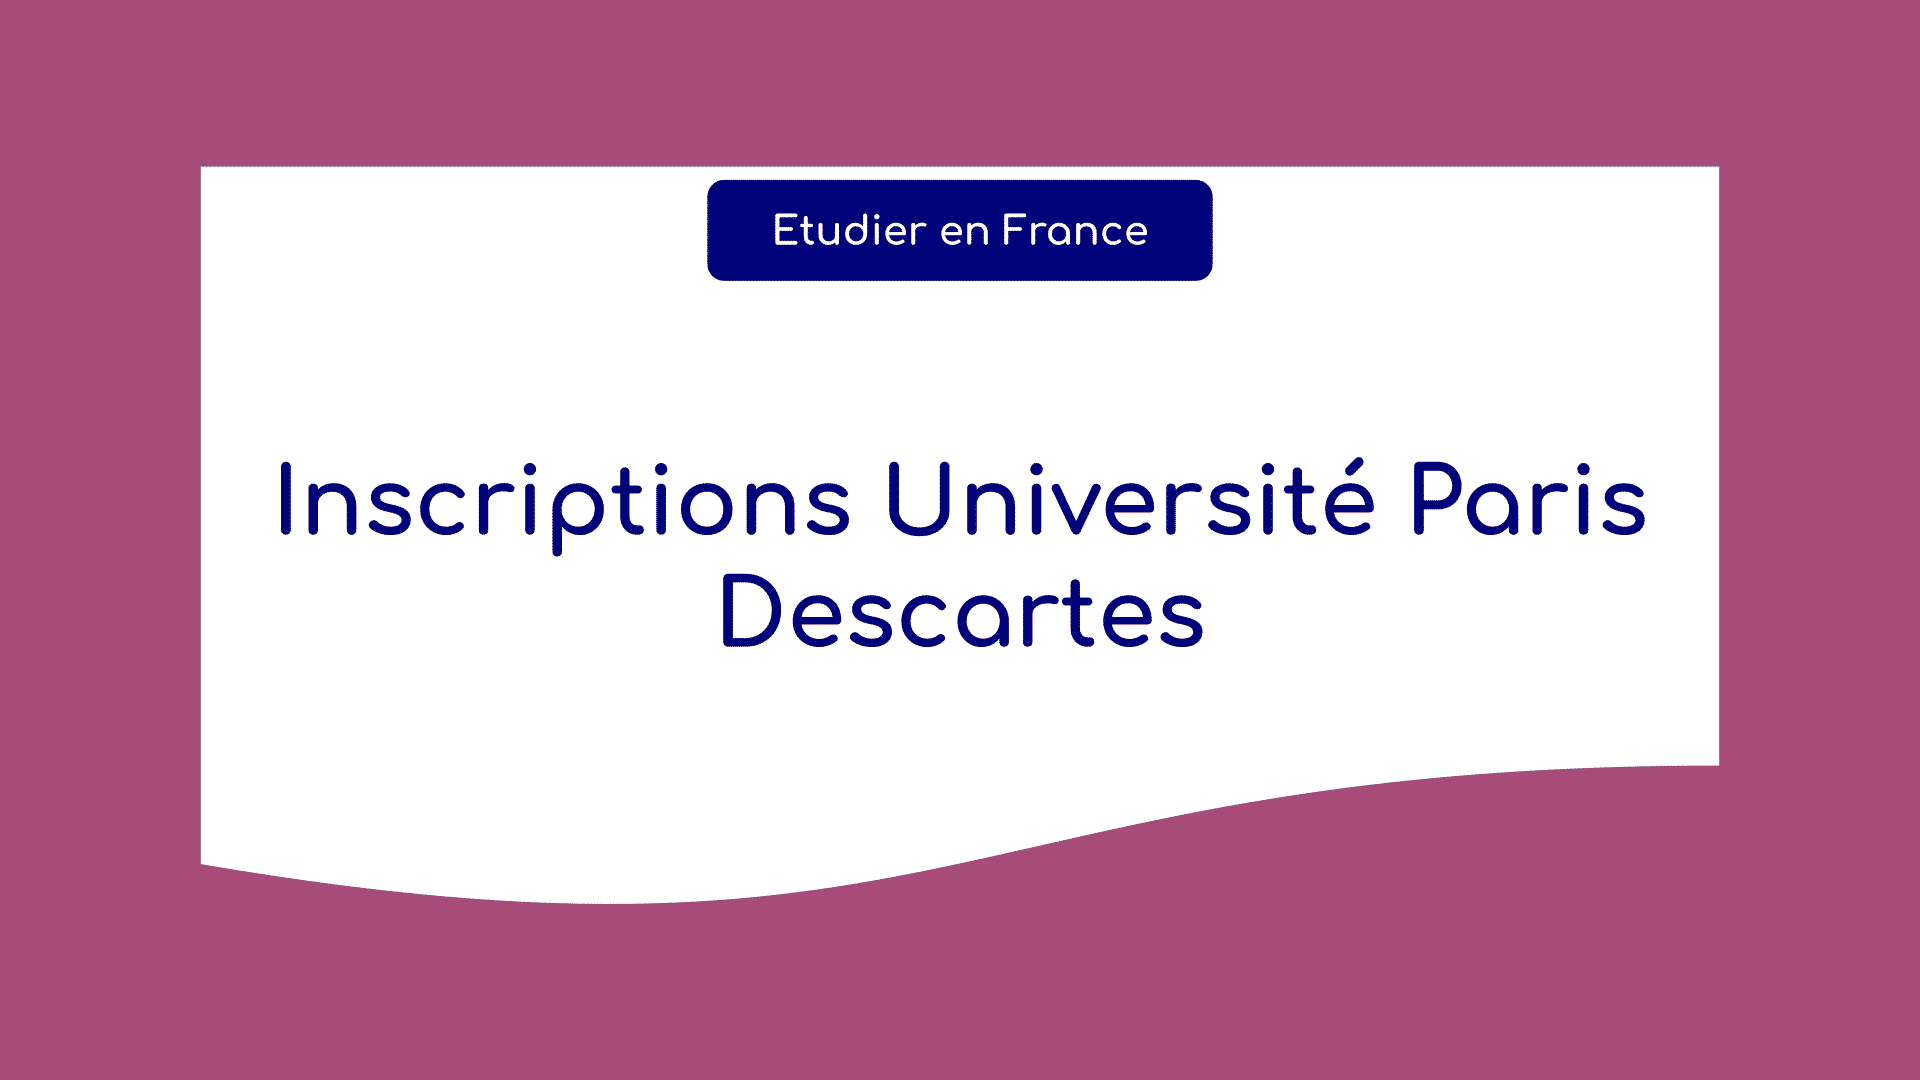 Inscriptions Université Paris Descartes